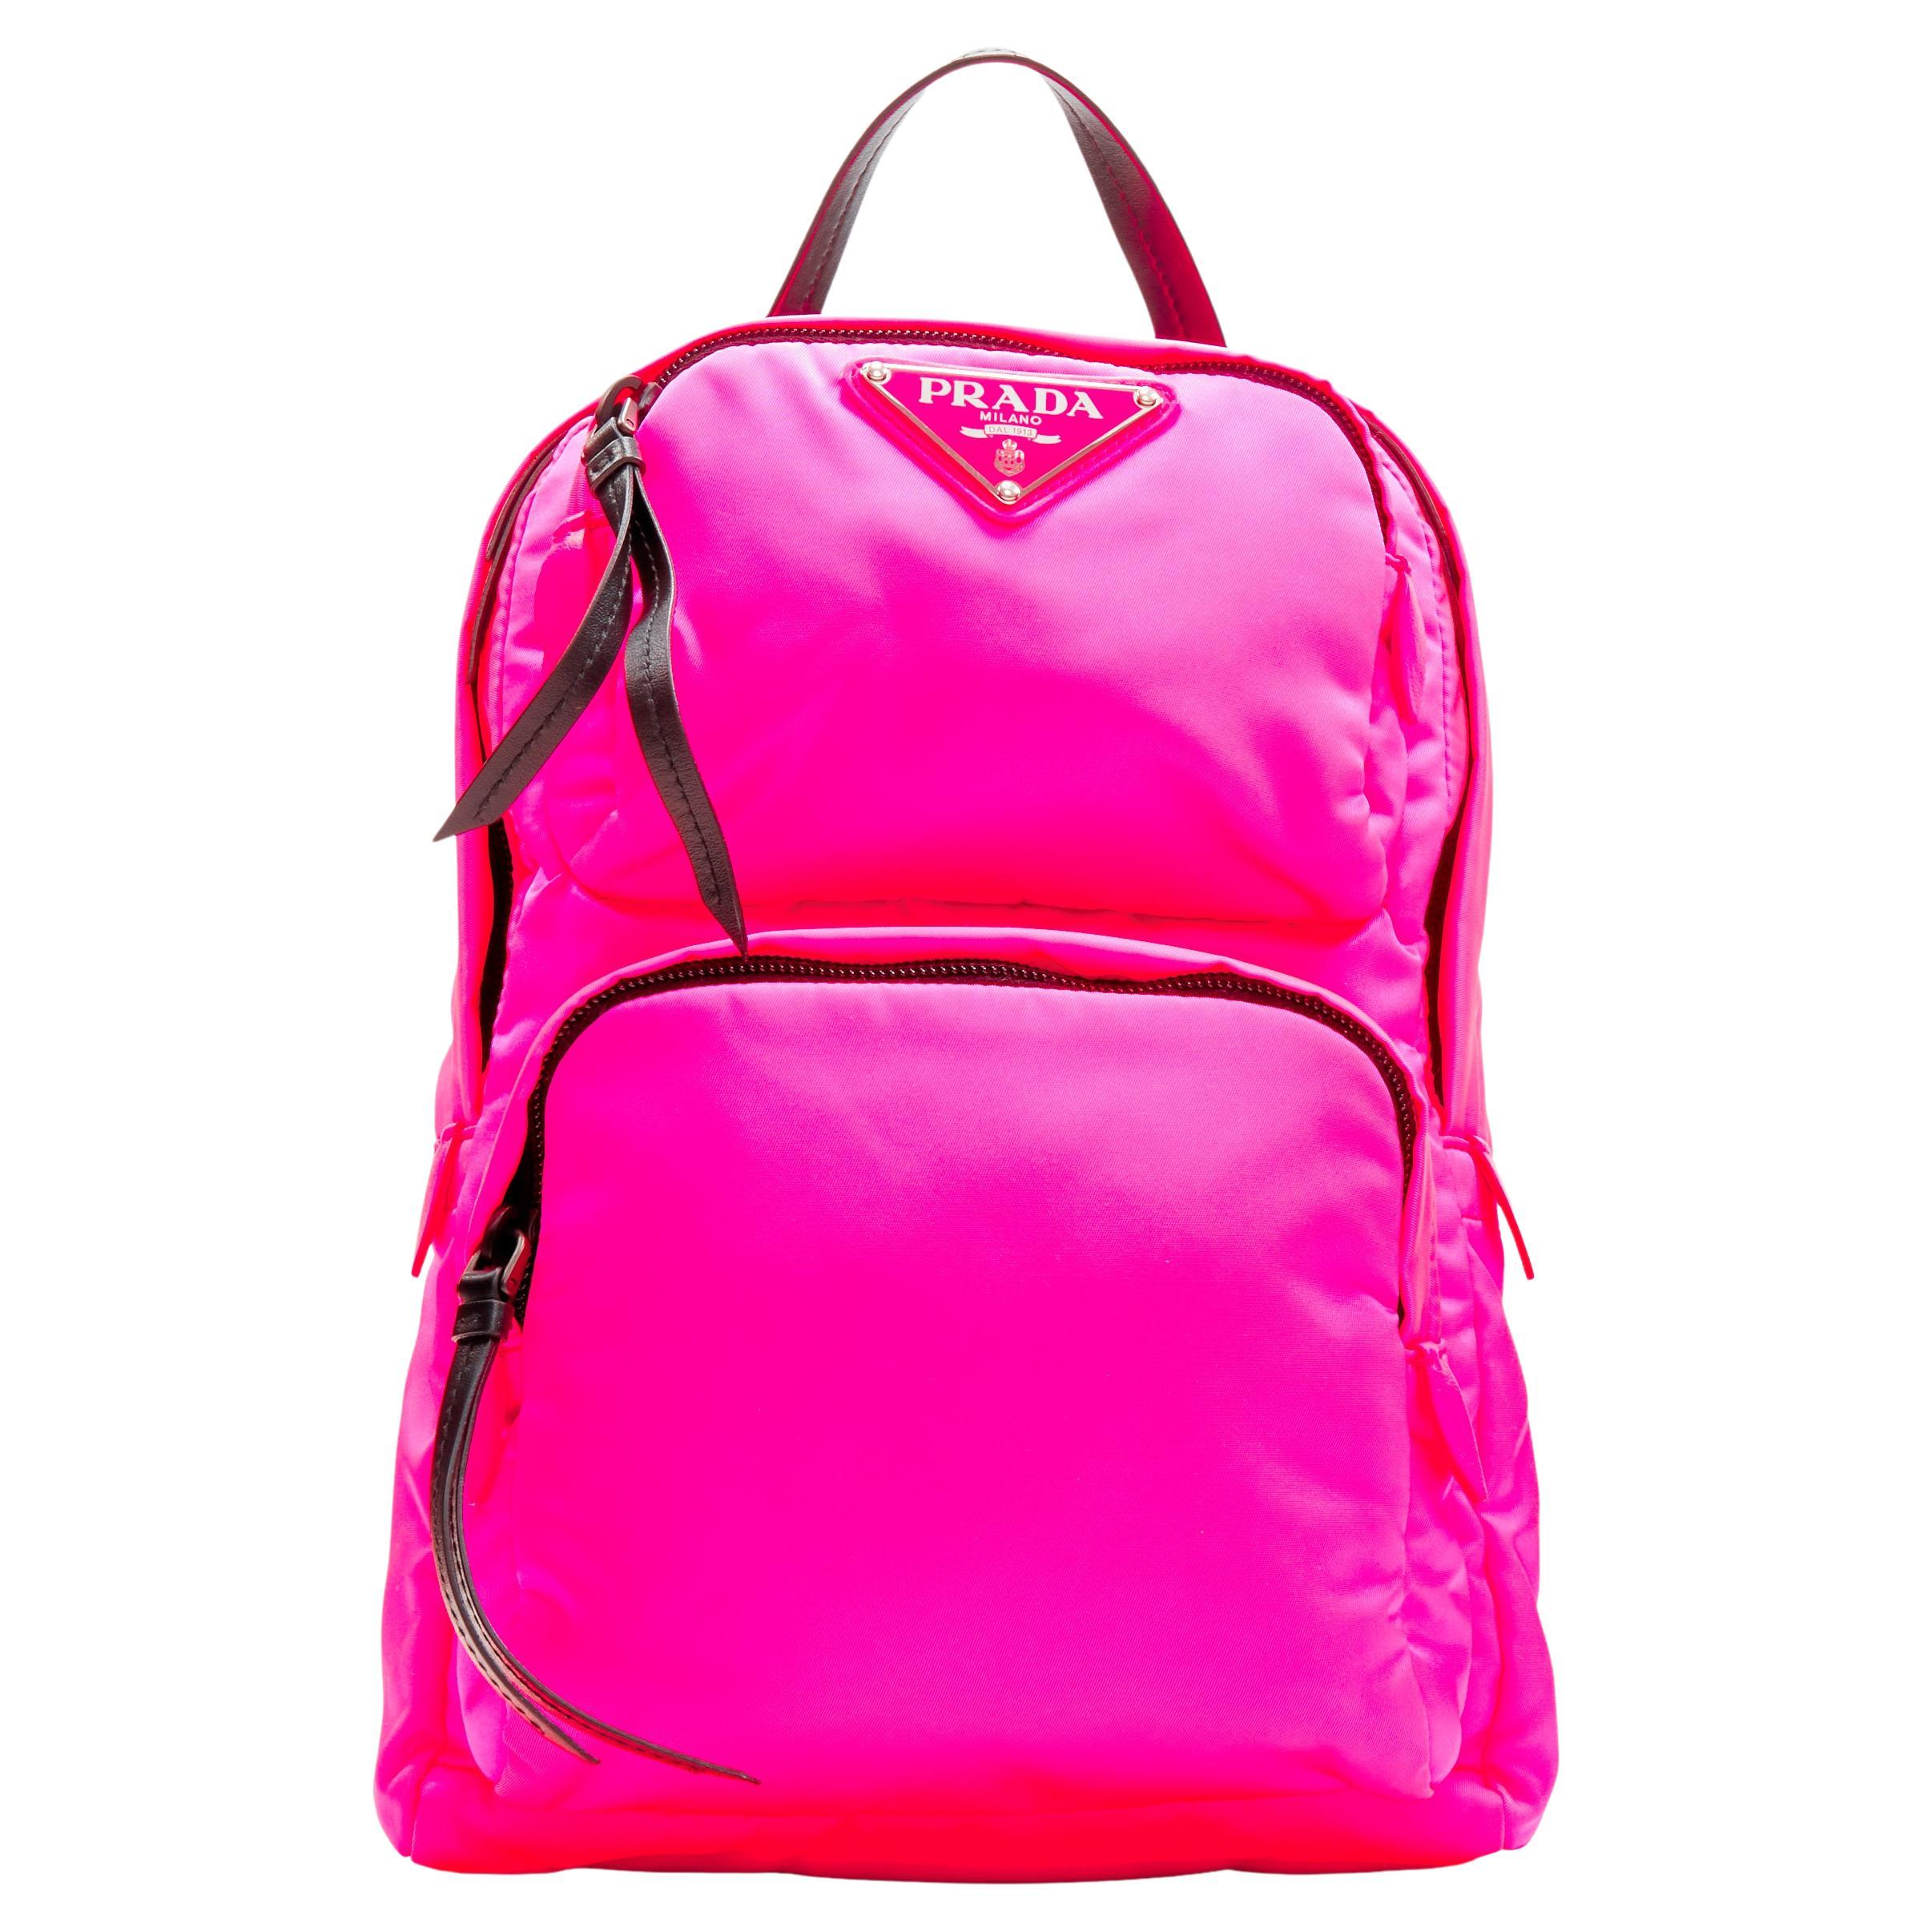 FILA black & Neon Small Backpack Purse Women's | eBay